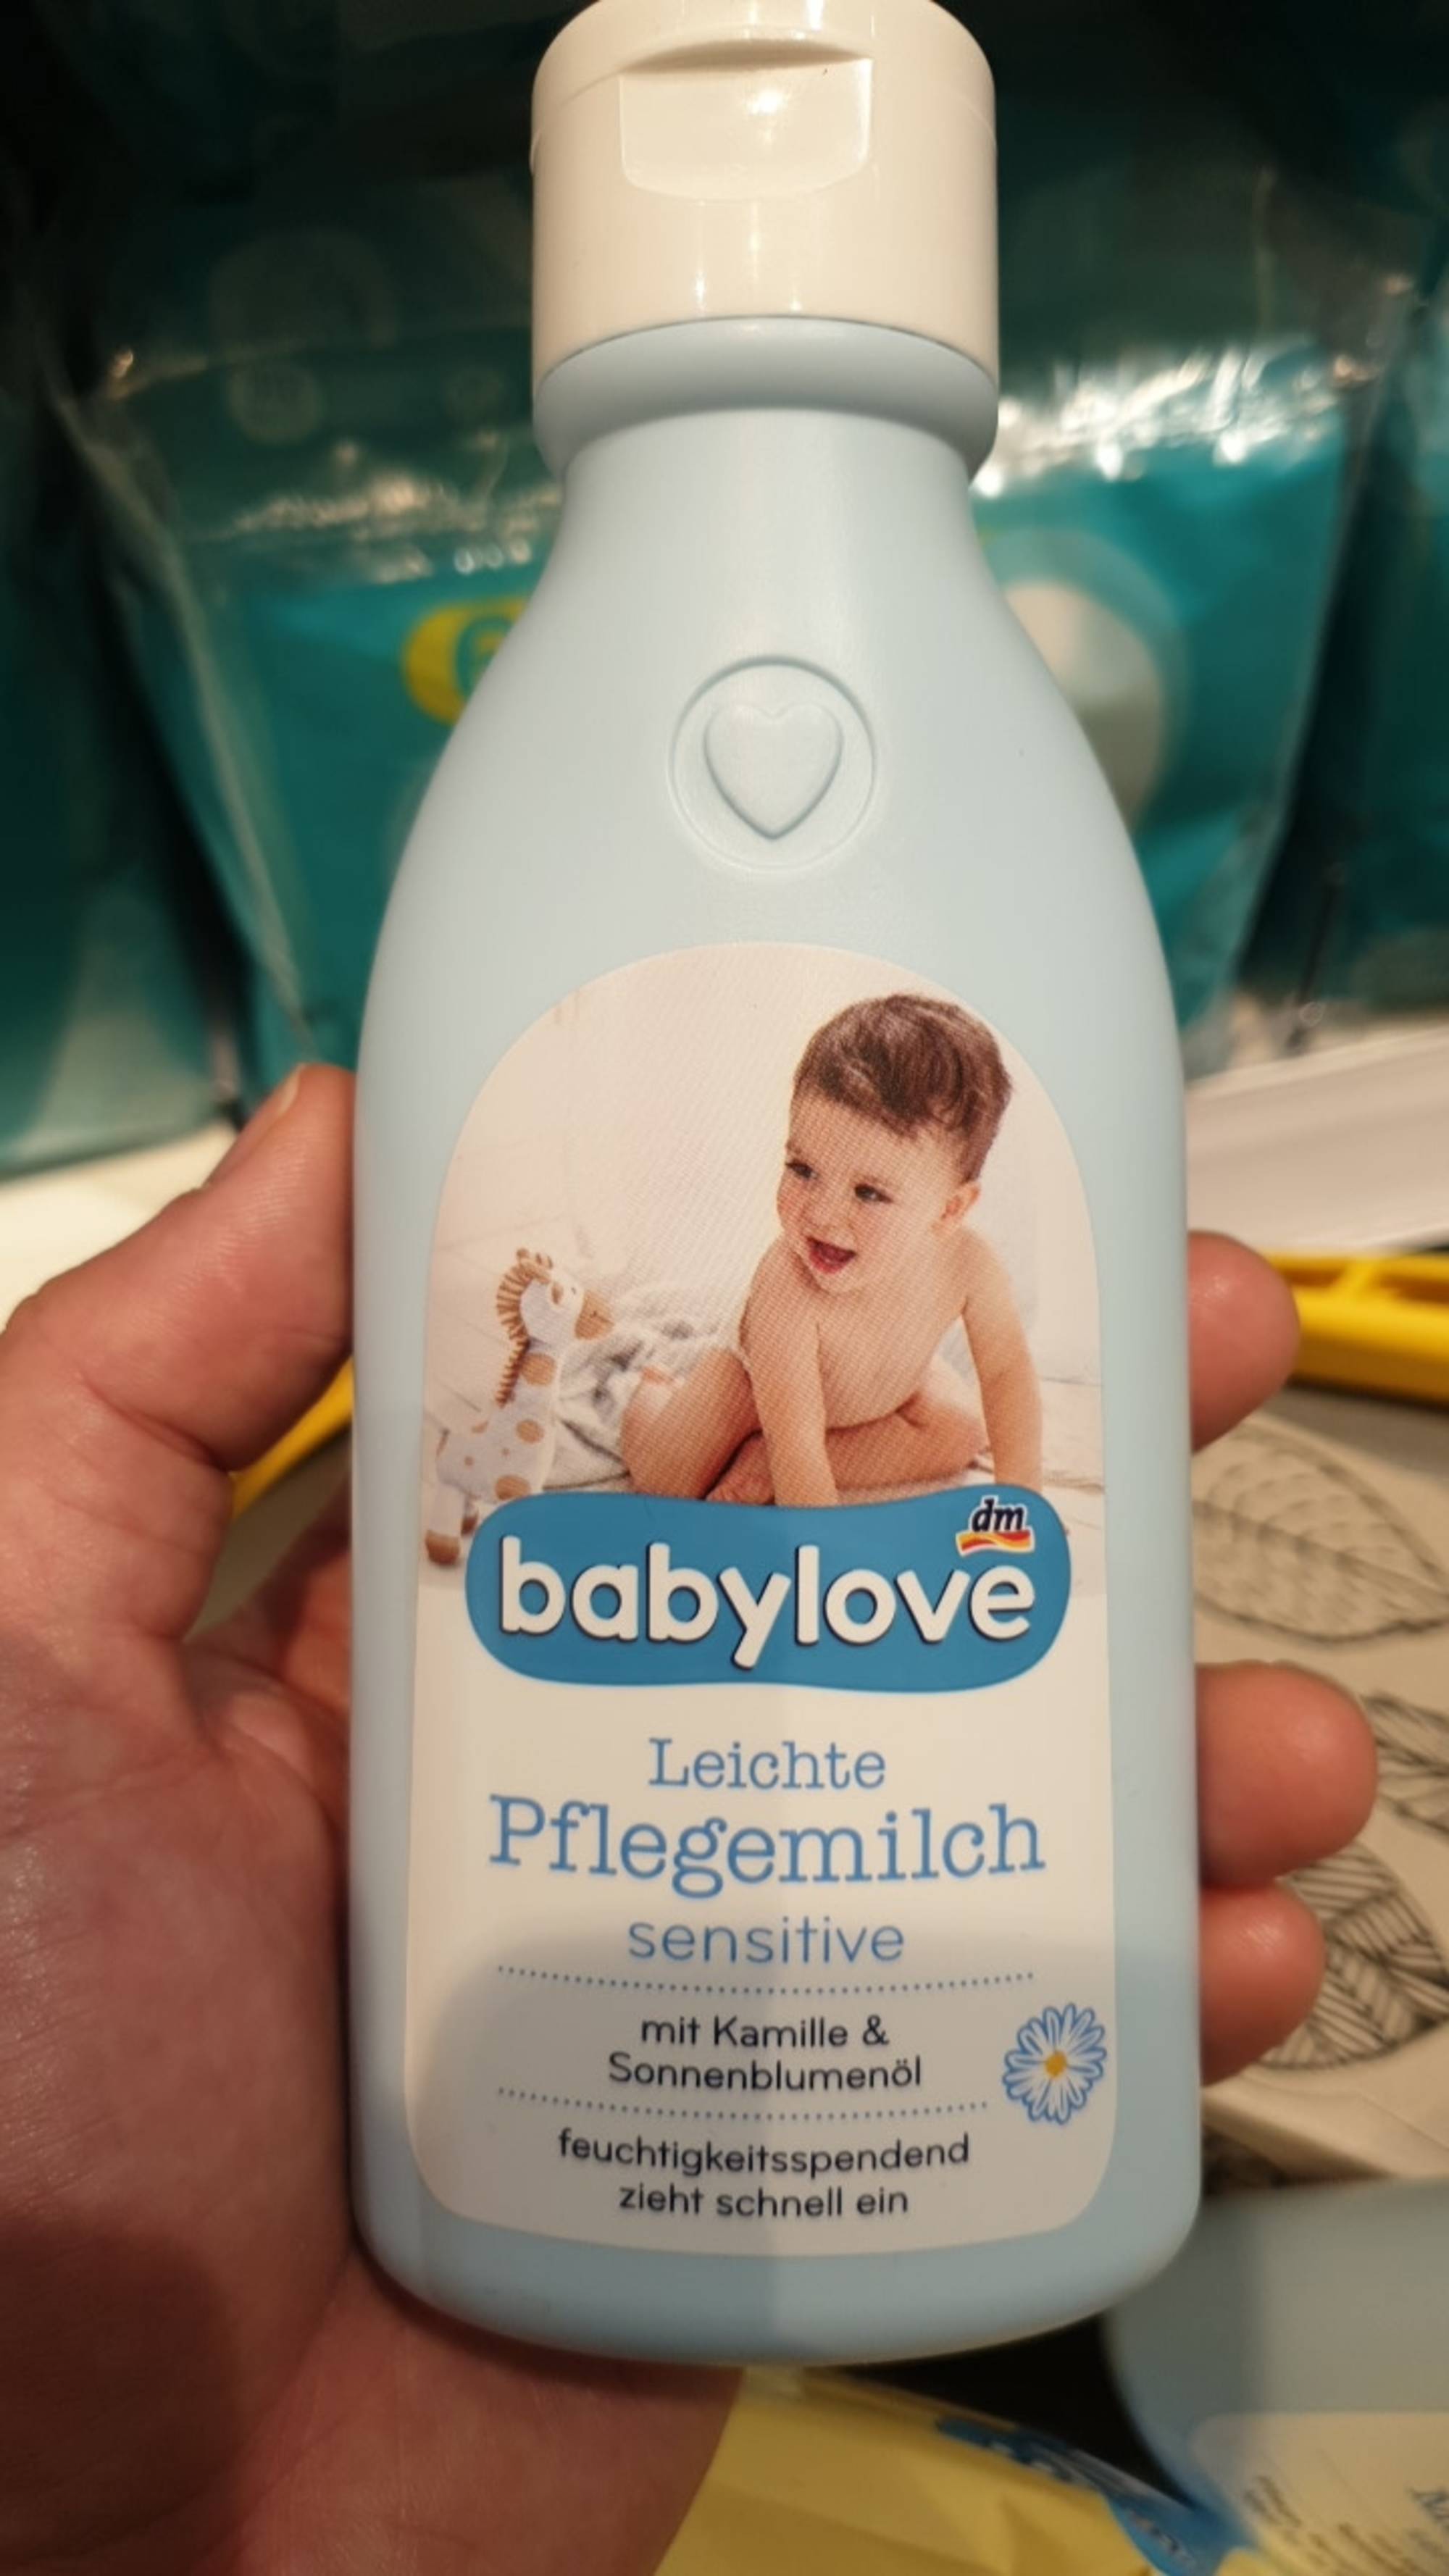 BABYLOVE - Leichte pflegemilch sensitive